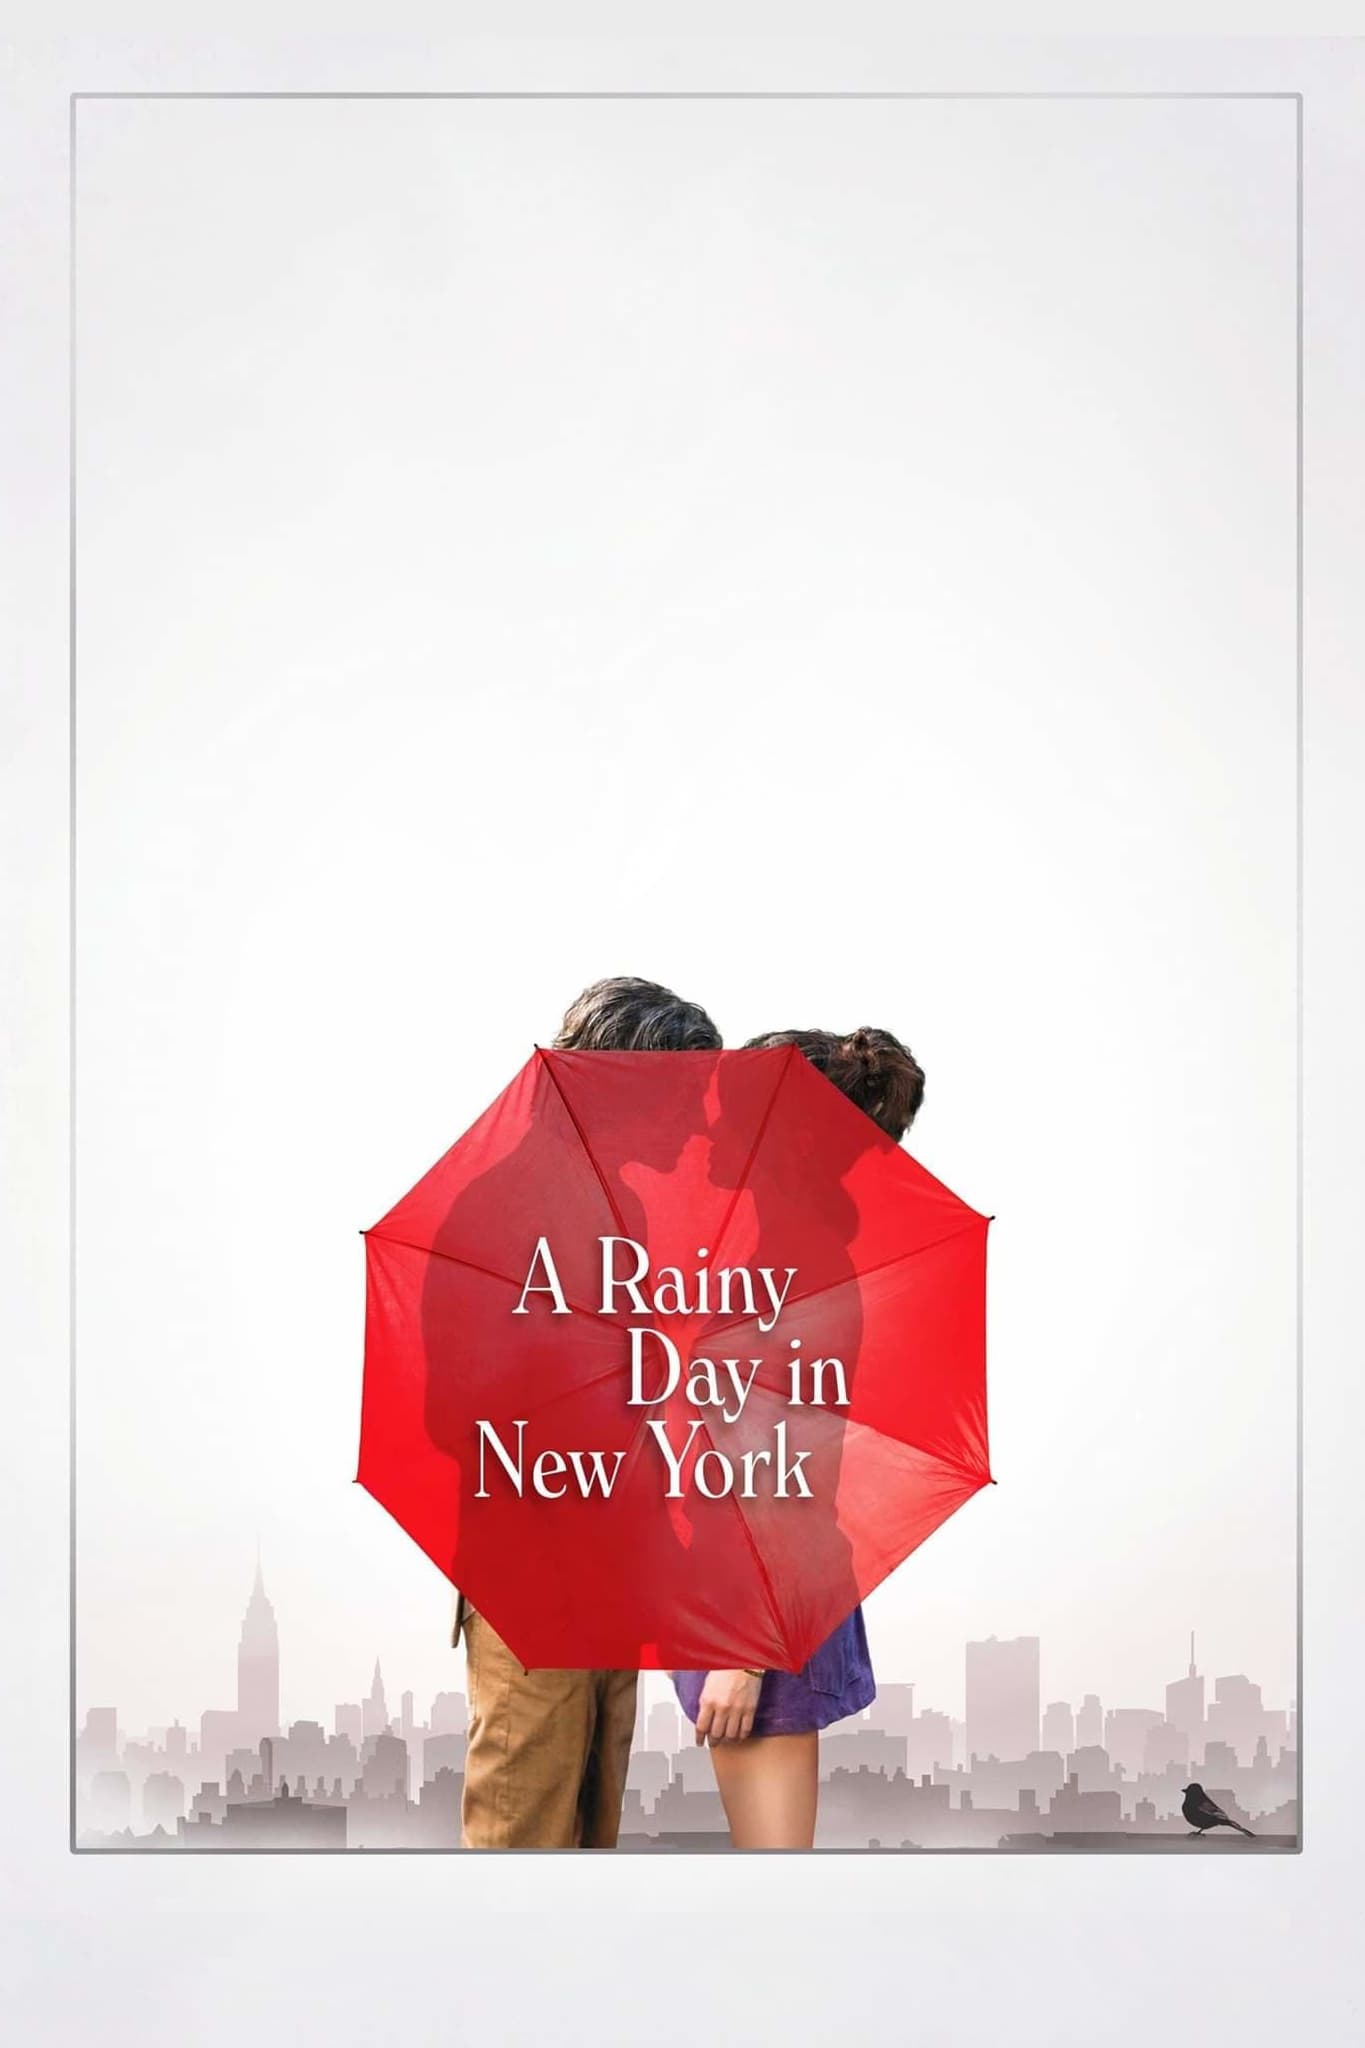 دانلود فیلم A Rainy Day in New York 2019